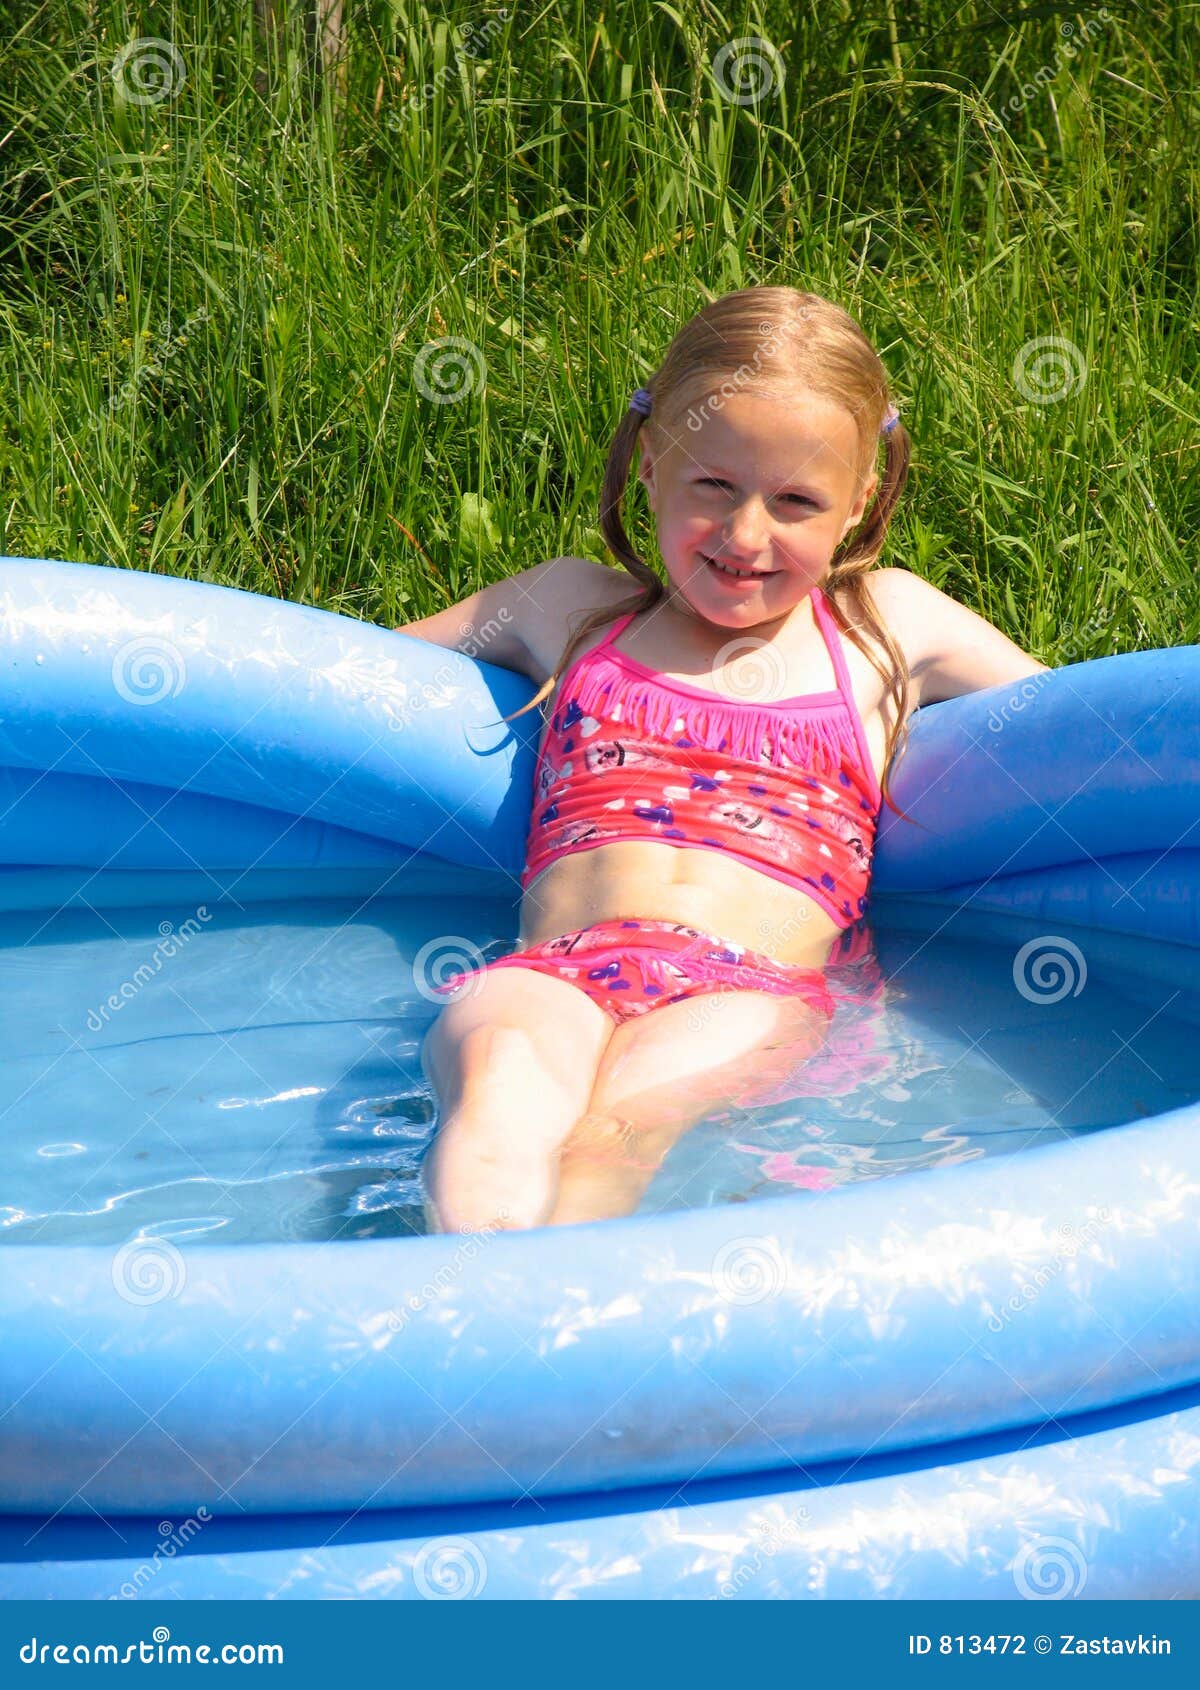 14 лет купаемся. Девочка в бассейне на даче. Девочка купается в бассейне. Девочки 10 лет в купальниках на даче. Девочки 10 лет в бассейне.